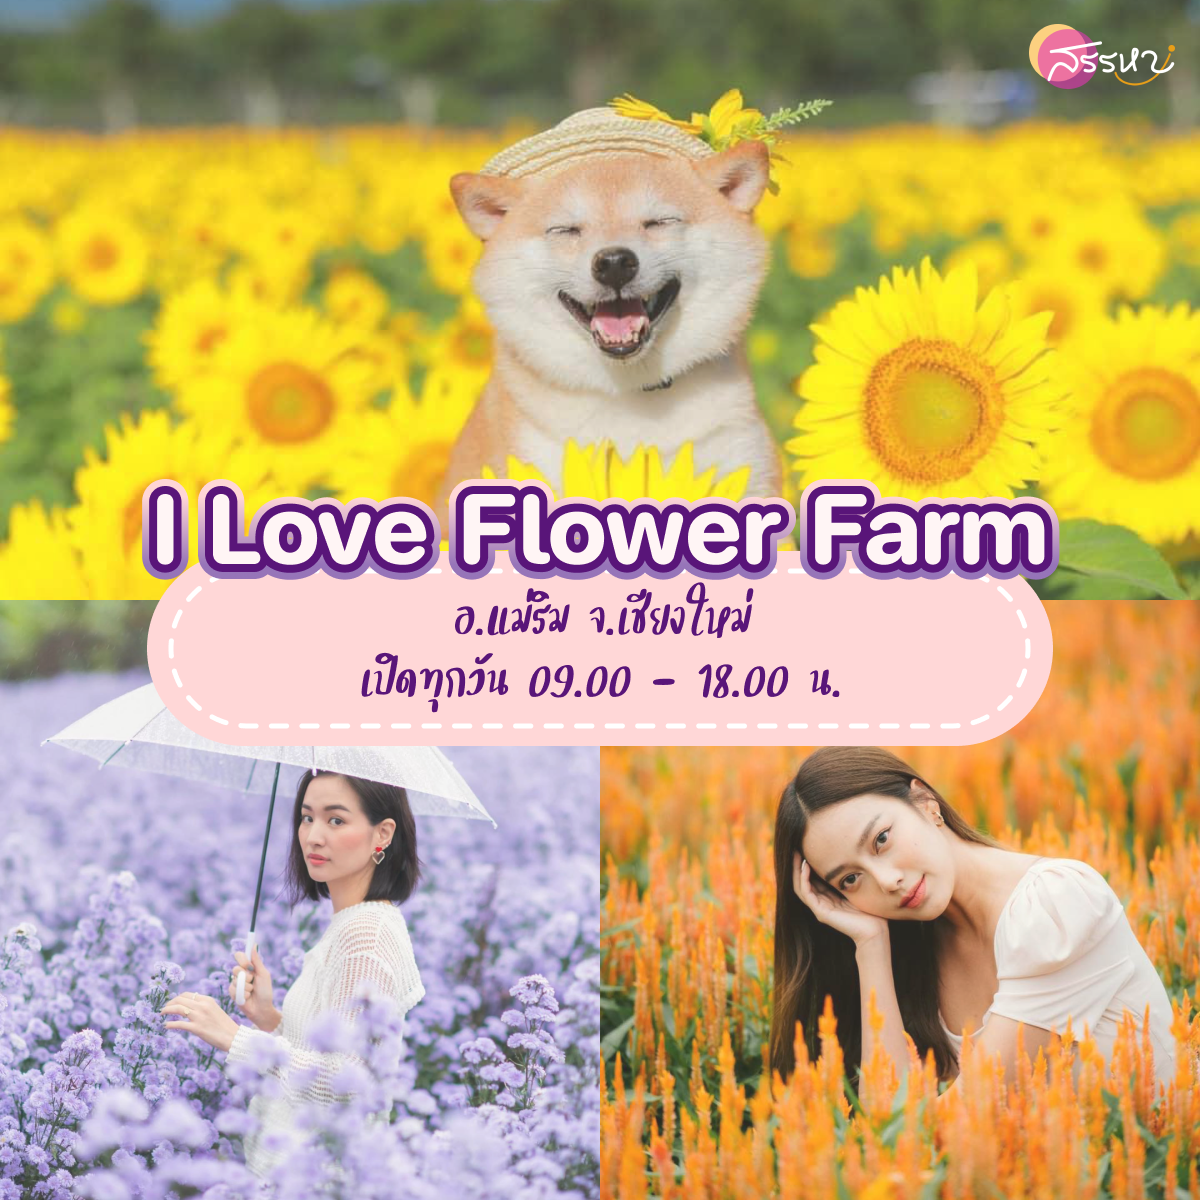 15 ที่เที่ยวเชียงใหม่ 2021-I Love Flower Farm